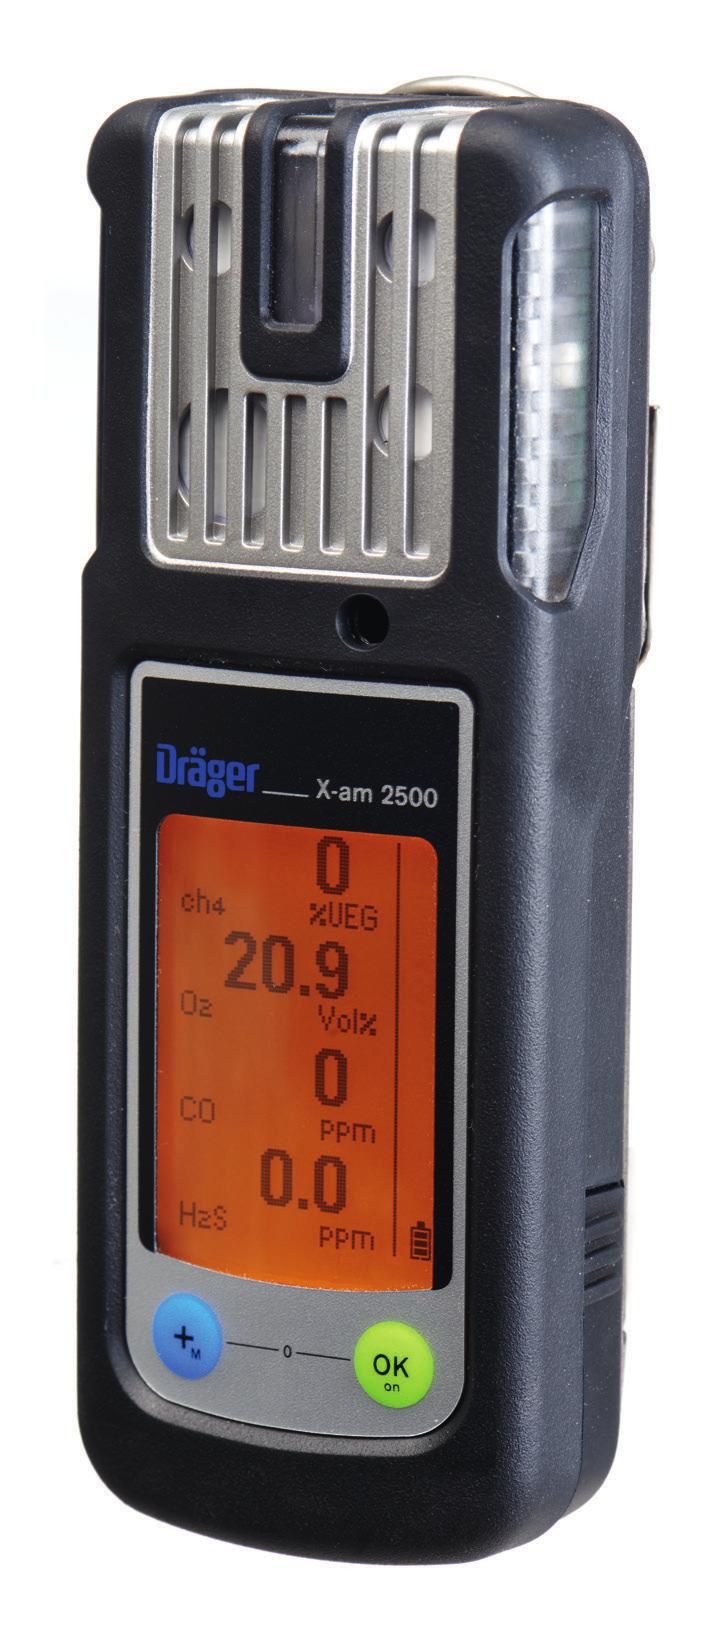 Dräger X-am 2500 Víceplynový detektor Dräger X-am 2500 byl speciálně navržen k osobní ochraně. Přístroj pro detekci 1 až 4 plynů spolehlivě měří hořlavé plyny i páry a také O2, CO, H2S, NO2 a SO2.